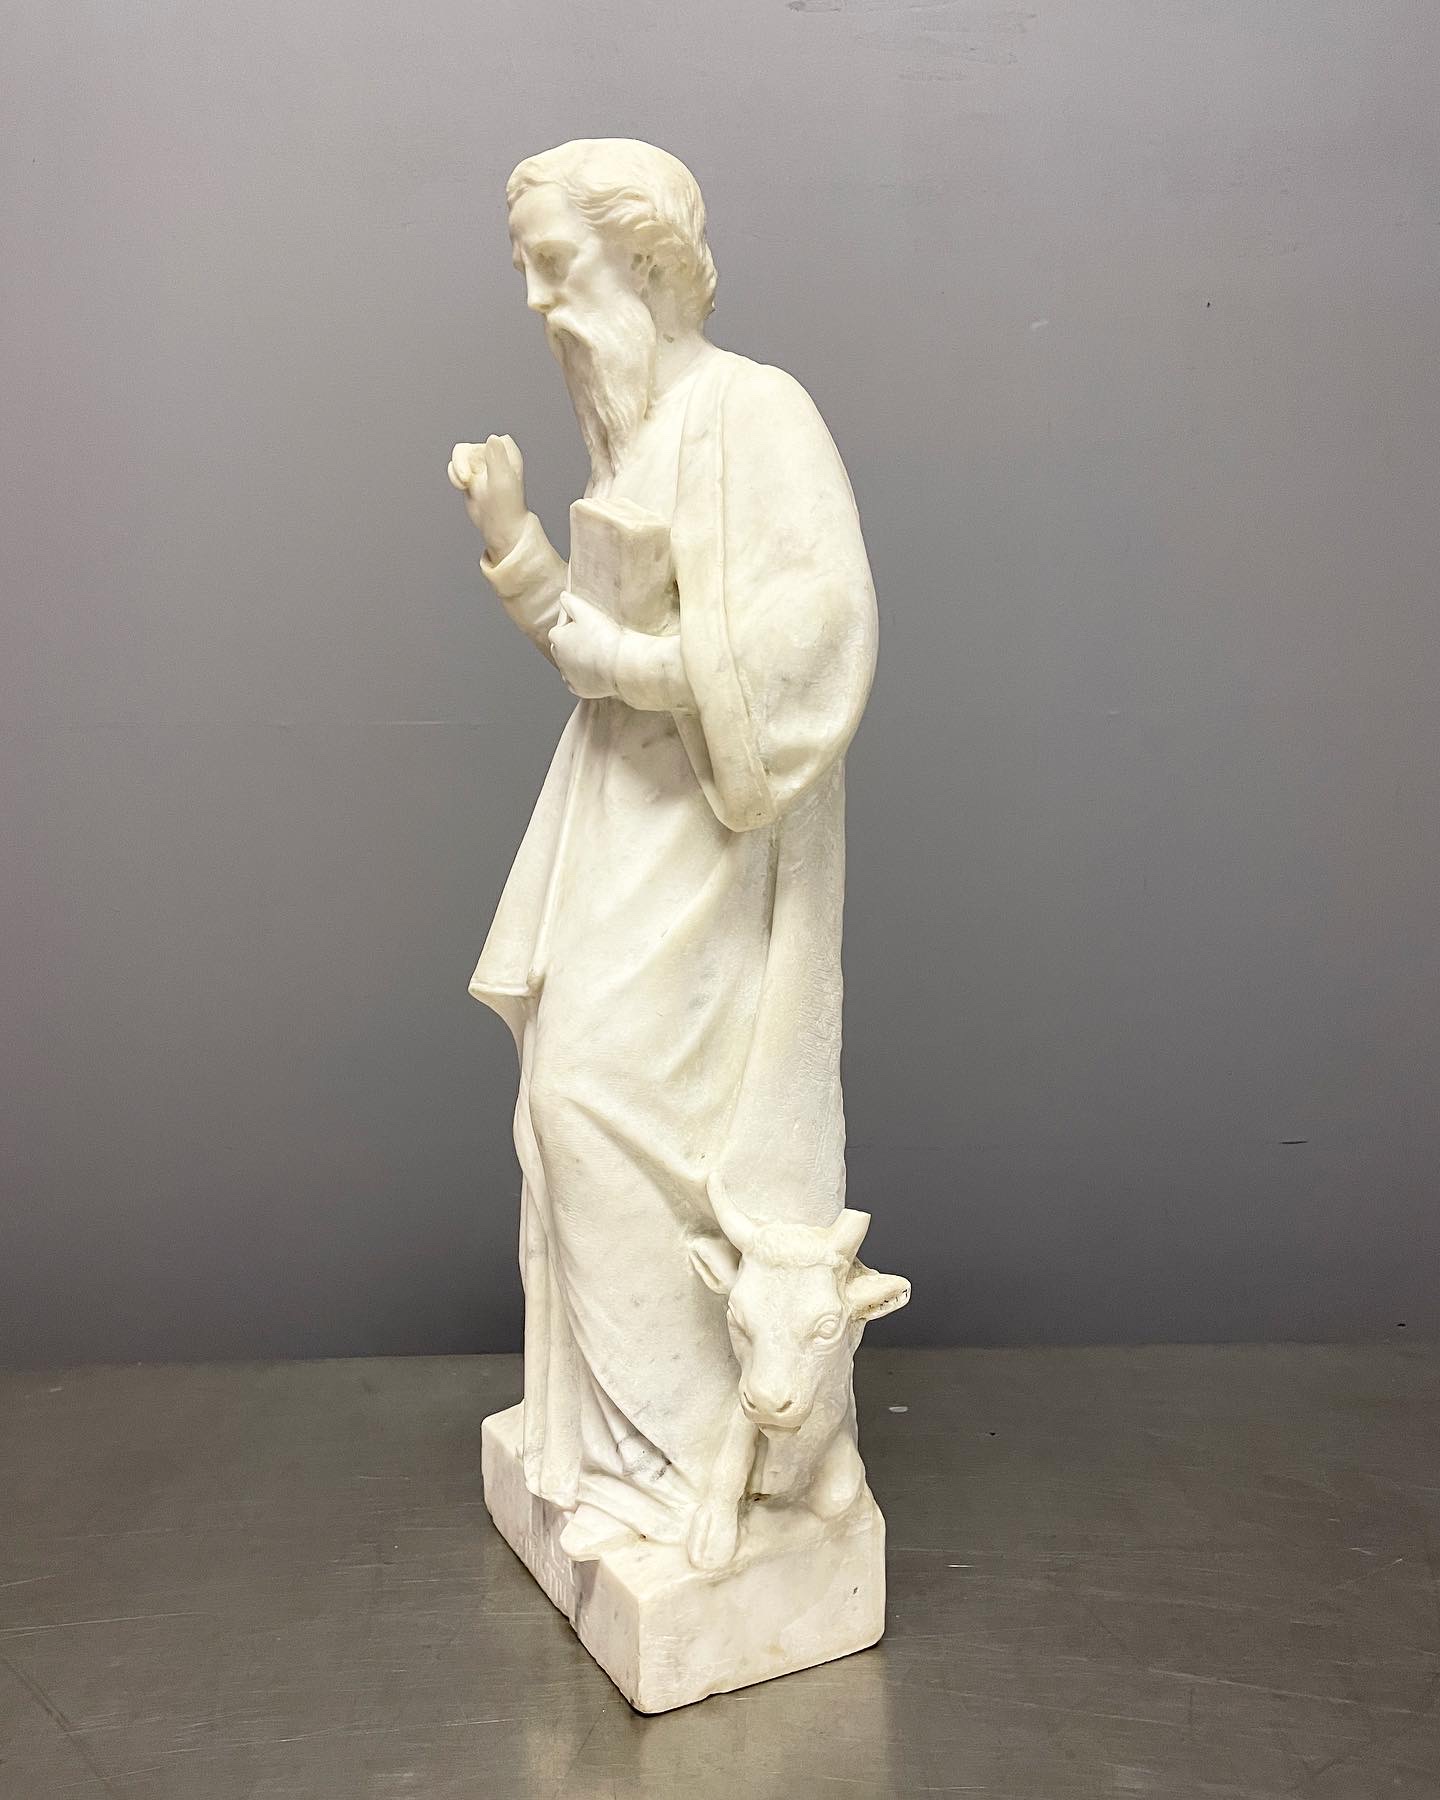 Sculpture-saint-luc-marbre-carrare-xixe-bas-relief-chapelle-privée-alcove-aurore-morisse-chestret5-liège-marchand-art-affaire-conclue-paris-liège4